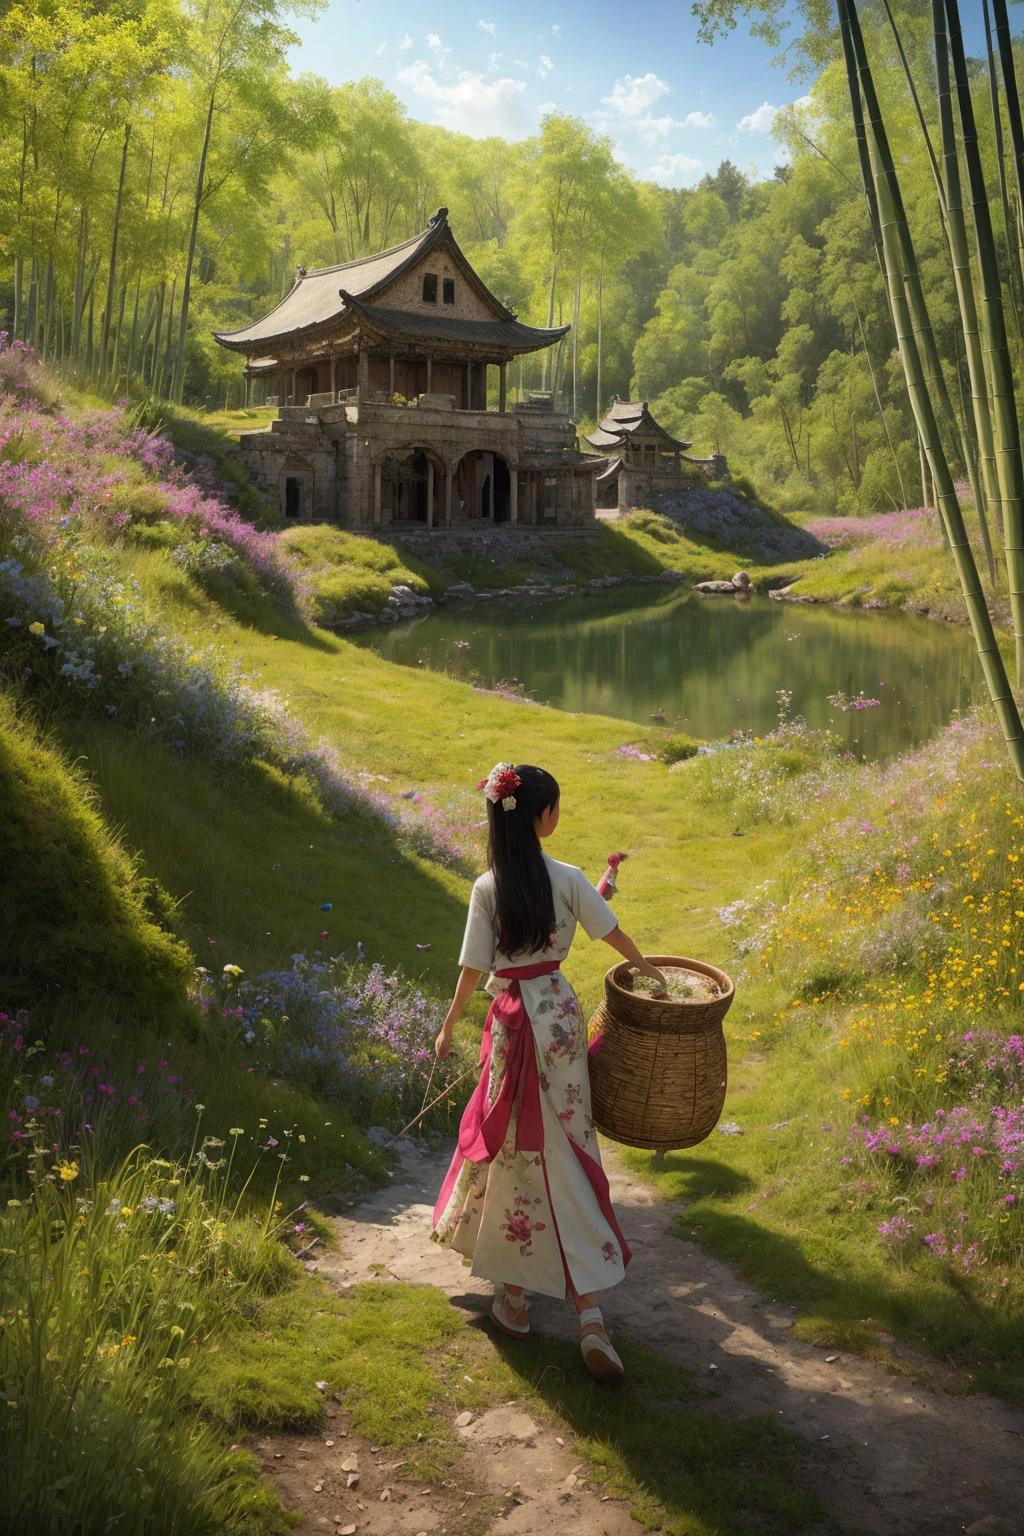 静止画内, 静かな湖の中央には古代遺跡がある, 野の花に覆われた, 草, モス, および菌類. この魅惑的なシーンの中で, 伝統的な衣装を着た若い中国人少女がキノコを採っている, 背中に竹かごを背負って, 蝶が彼女の周りを飛び回る, 調和と神秘の感覚を生み出す.
高解像度, (フォトリアリズム, 傑作品質, 最高品質),  ピュエロスフェイス_v1